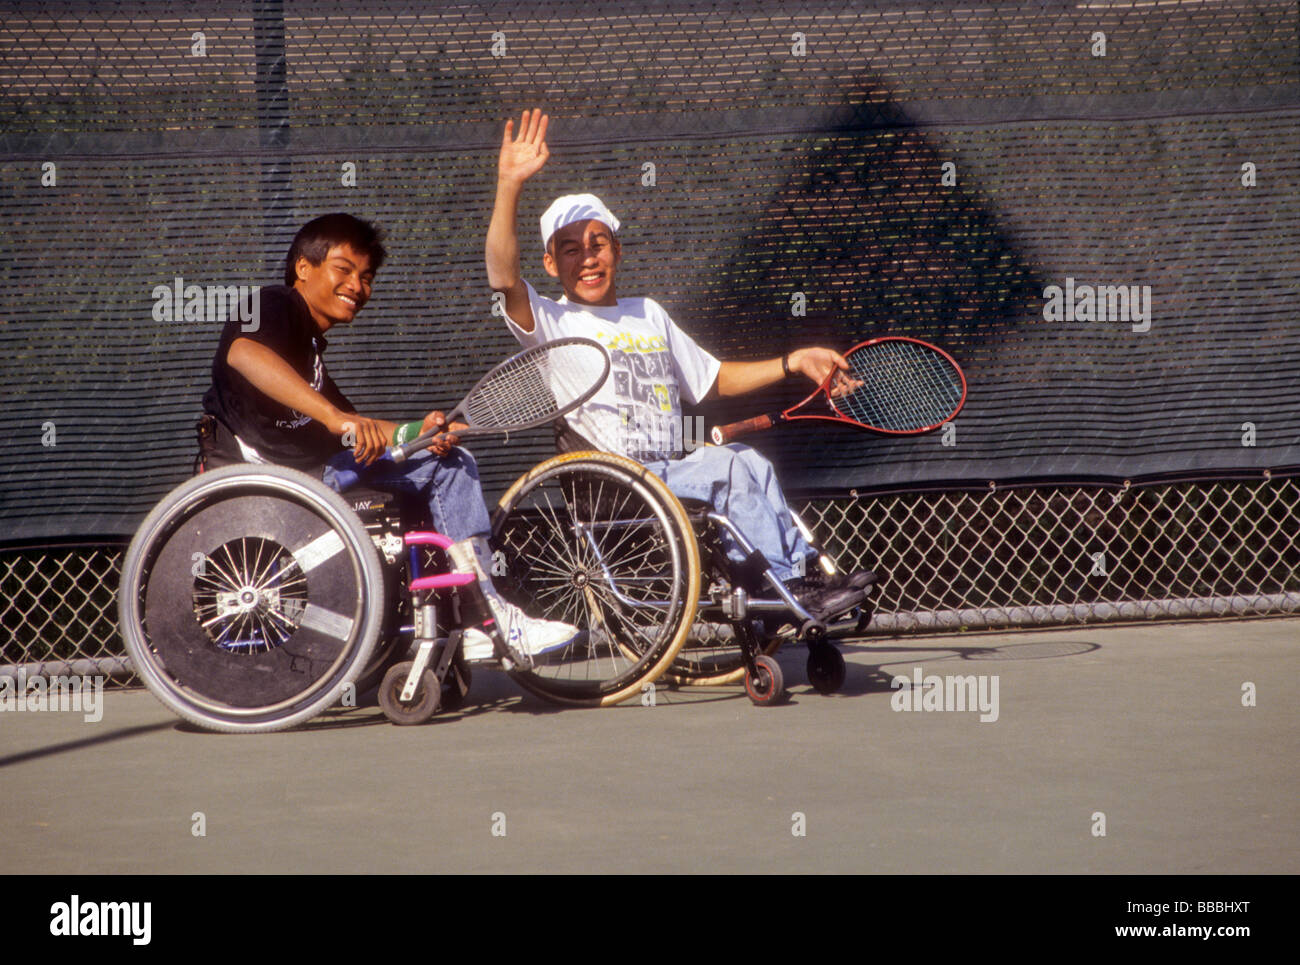 Handicap Rollstuhl Tennis teenboy Welle Lächeln glücklich Sport überwinden Übung konkurrieren spielen asiatisch-amerikanische Stockfoto